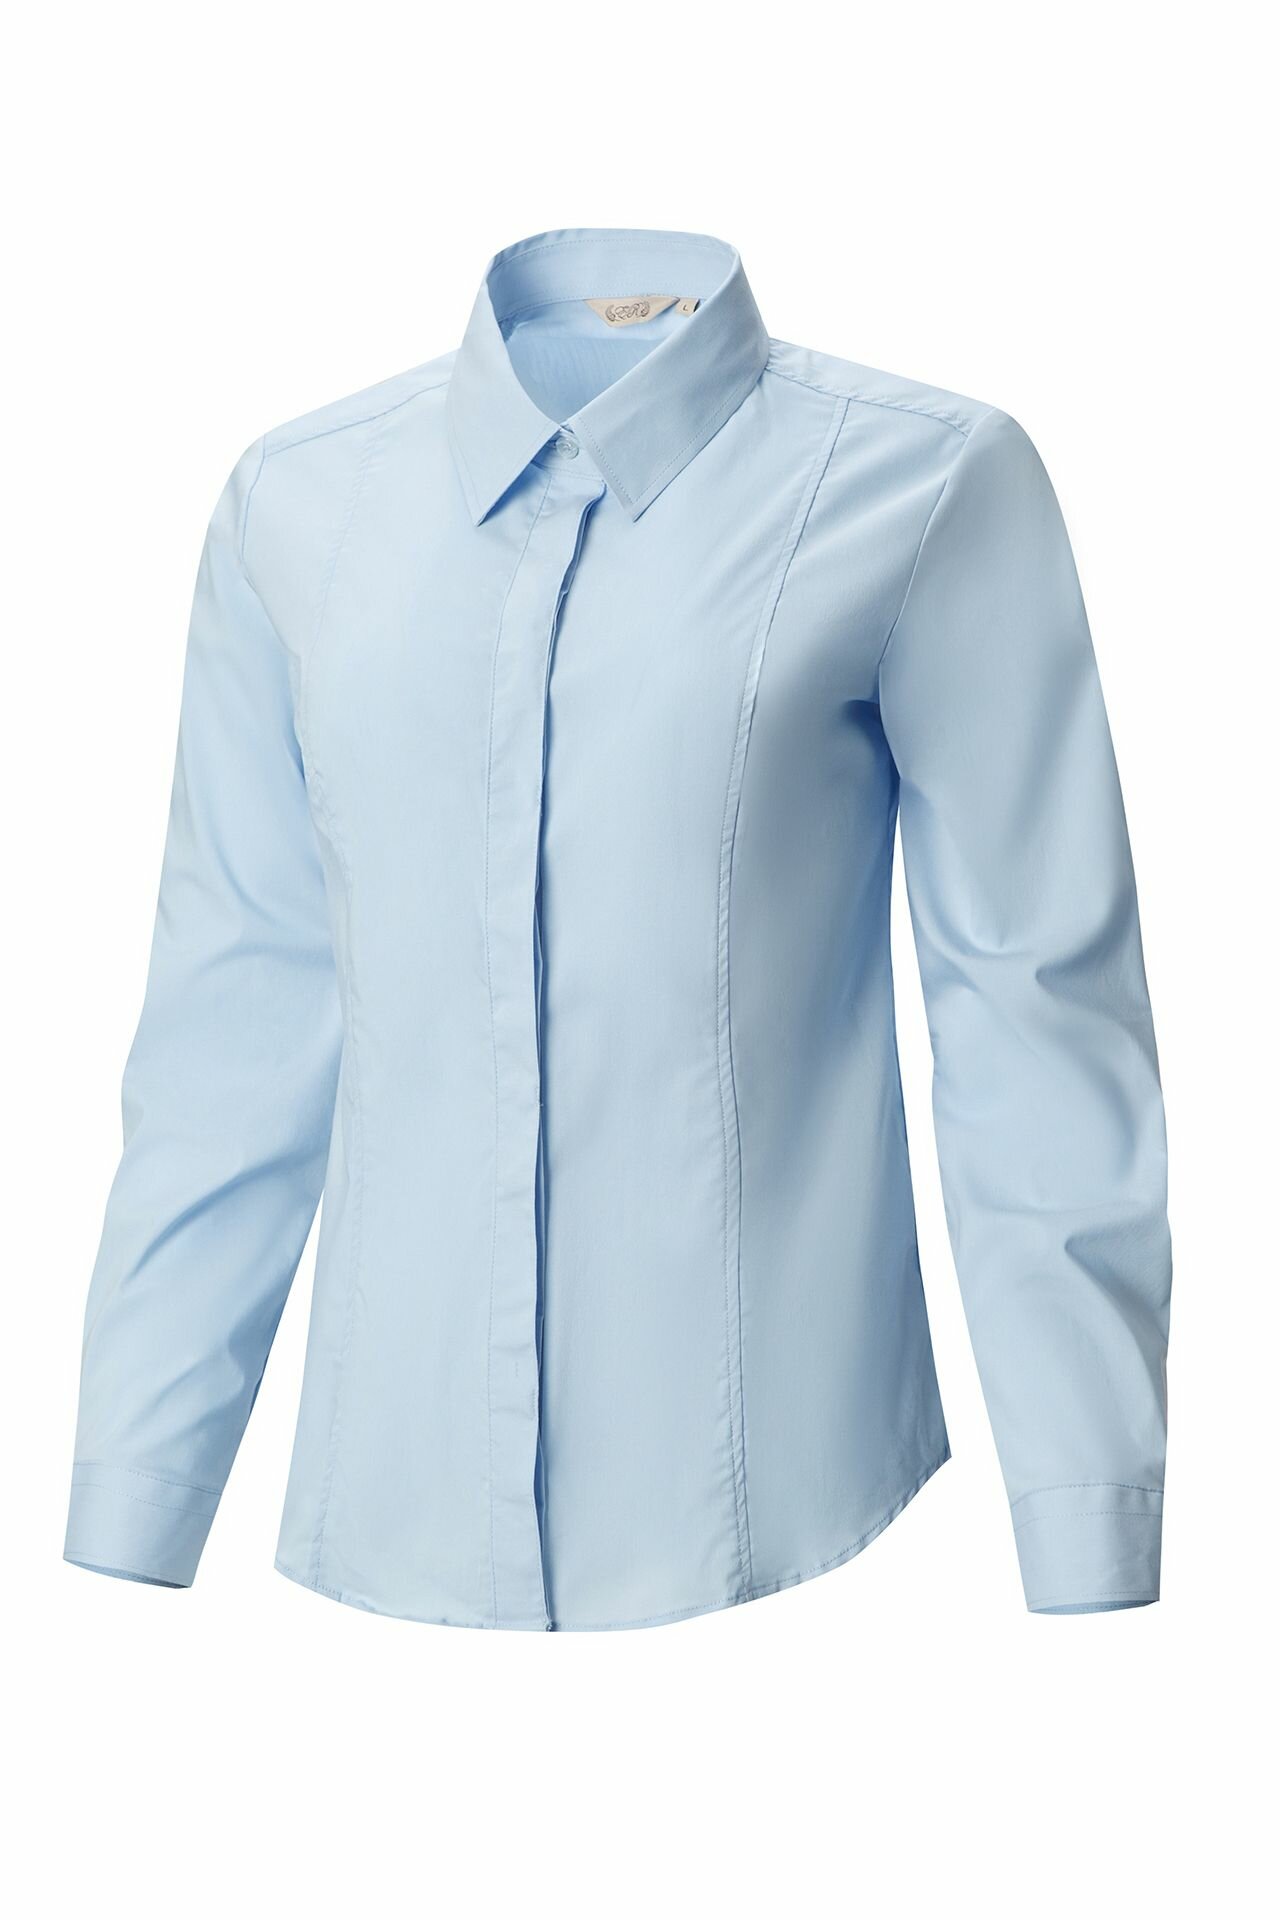 Рубашка женская El-Risto удлиненная голубой 52(3XL)